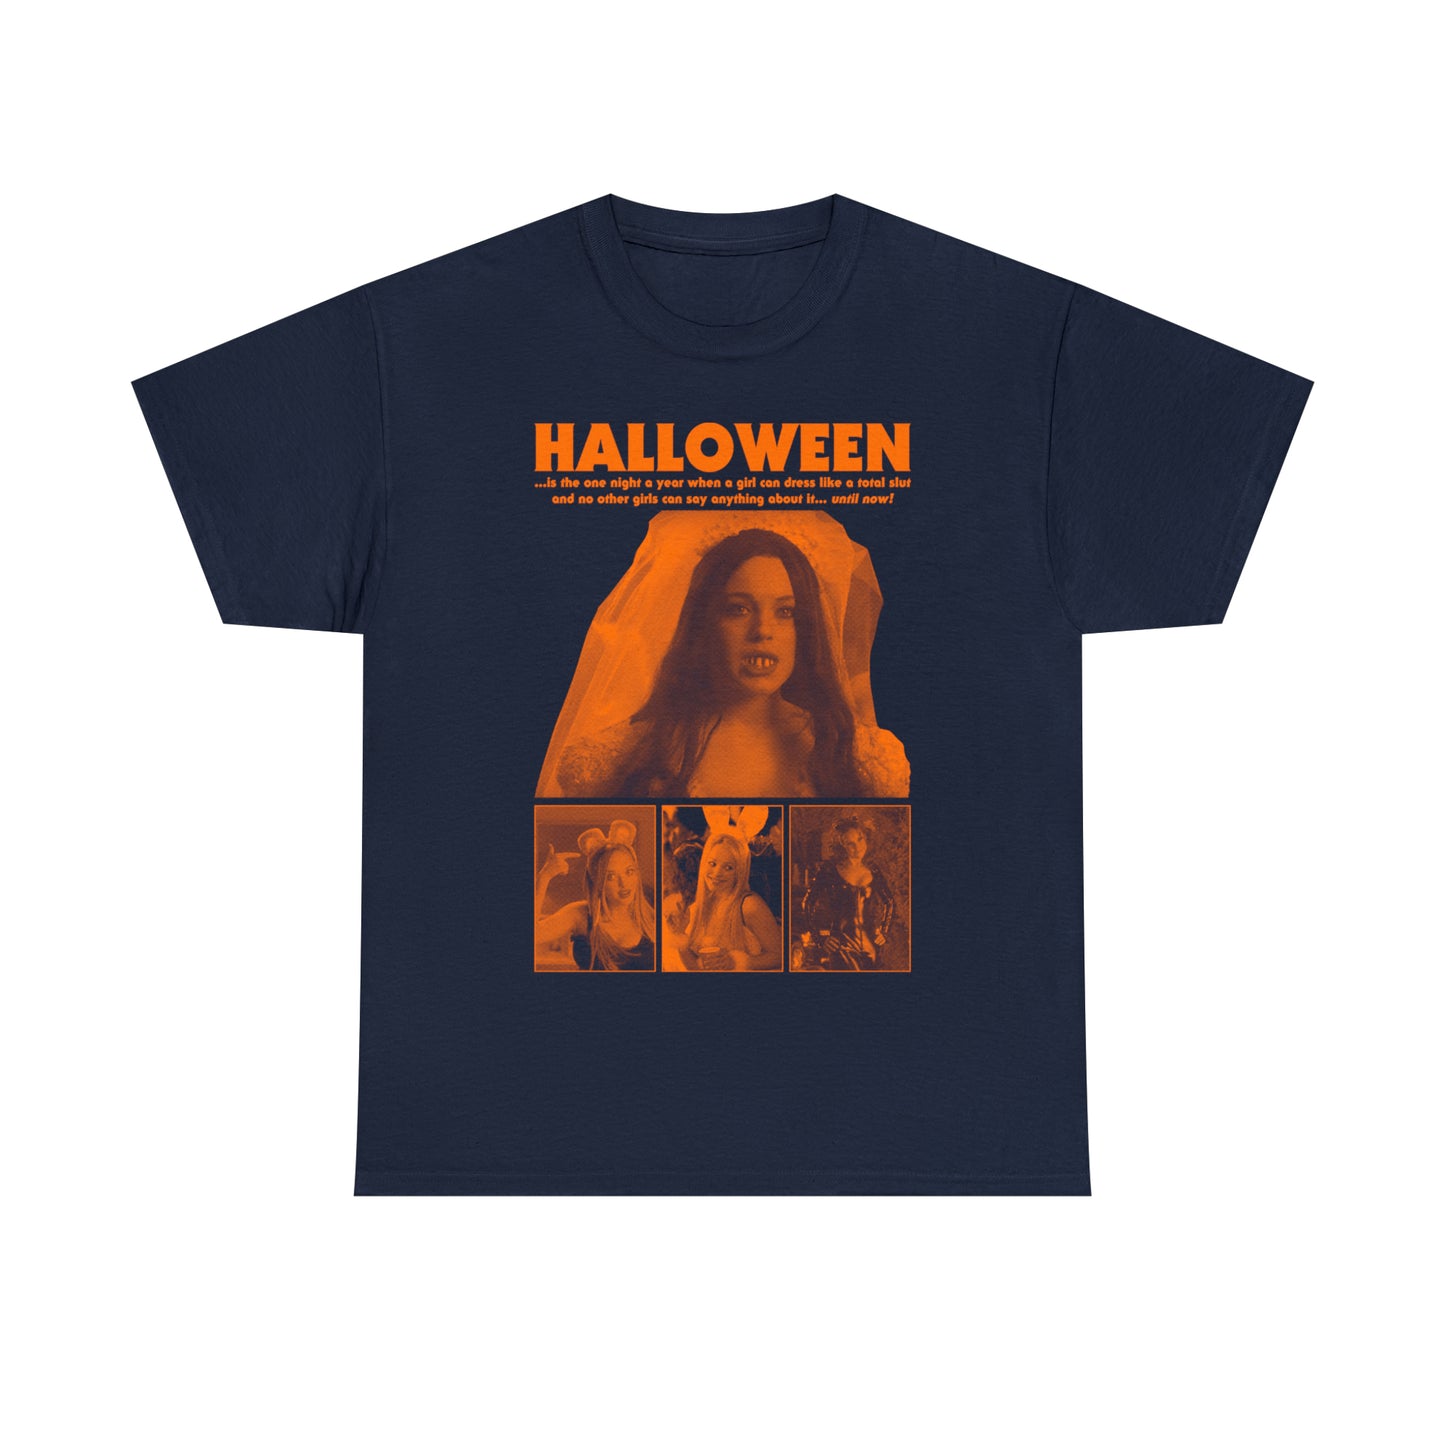 Mean Halloween t-shirt